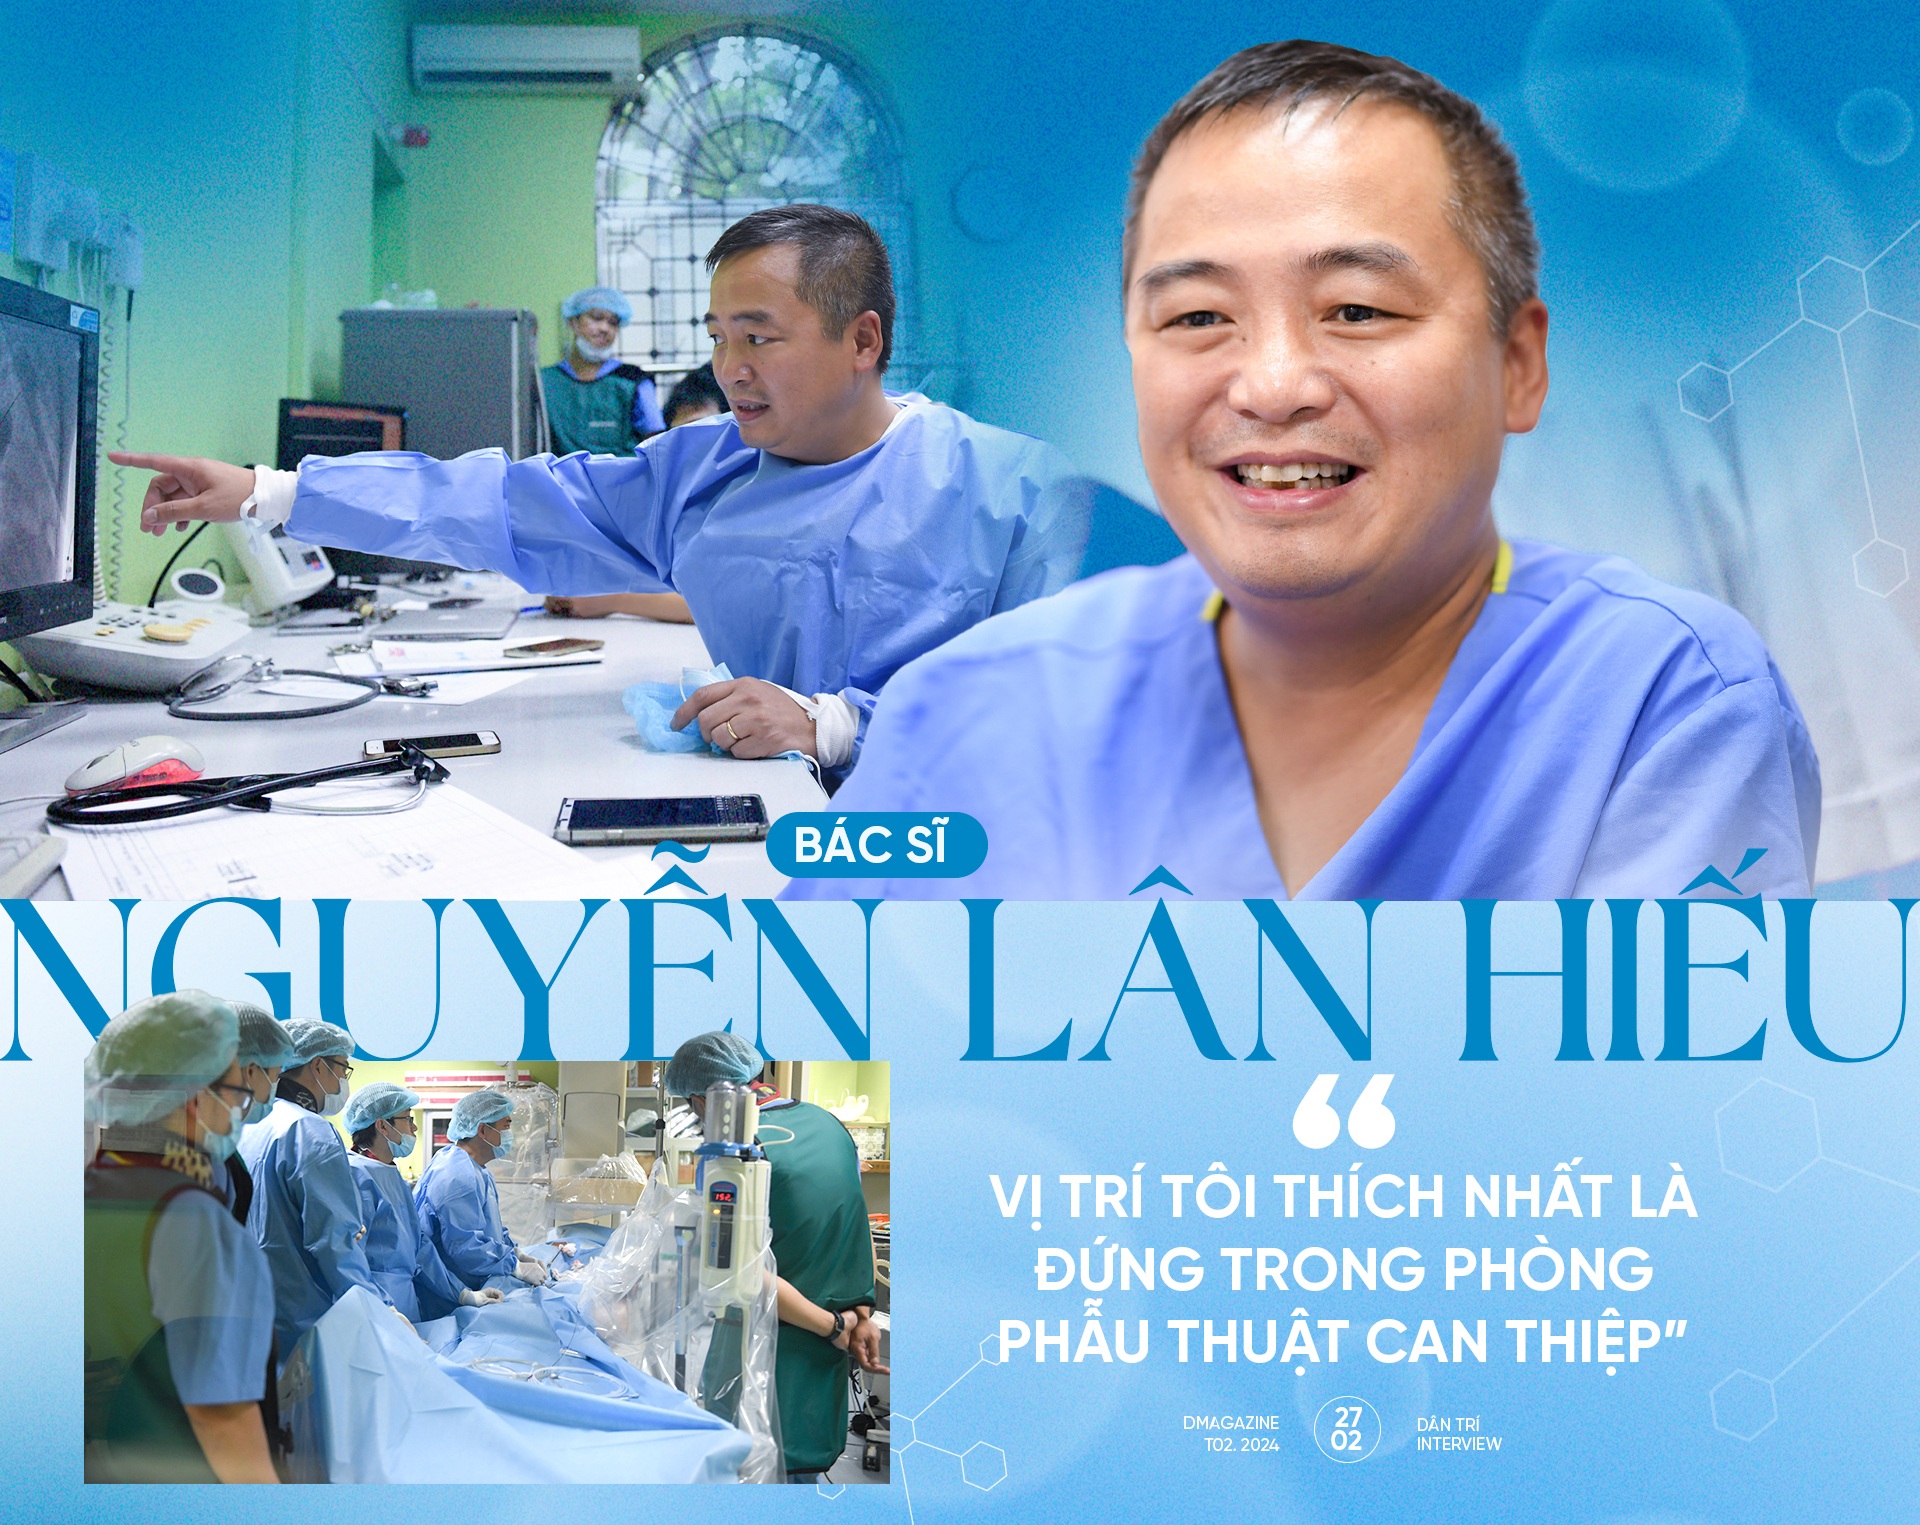 BS Nguyễn Lân Hiếu: "Vị trí tôi thích nhất là ở phòng phẫu thuật can thiệp"